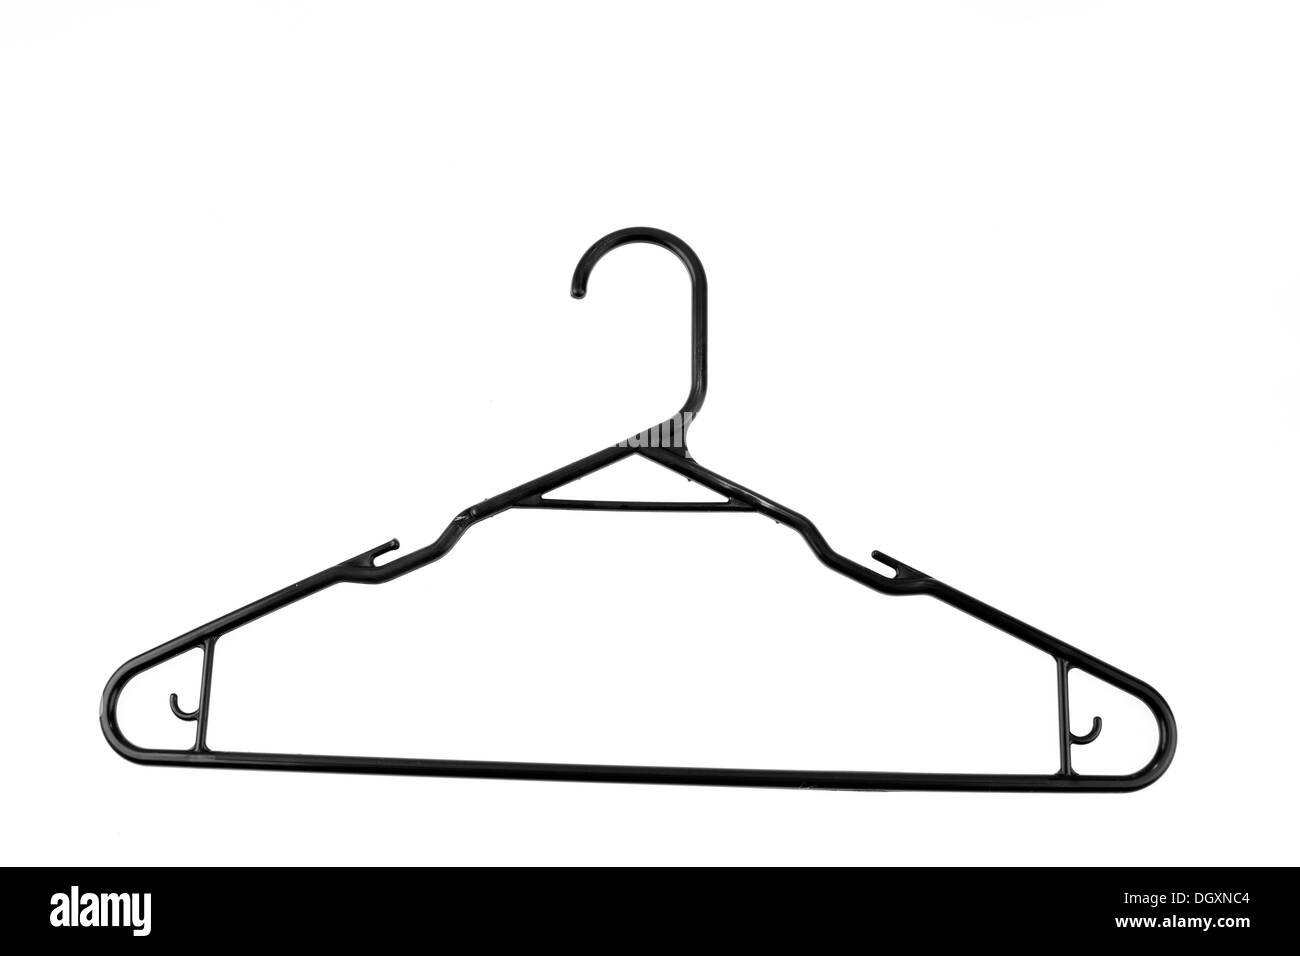 Coat hanger isolated on plain background Stock Photo